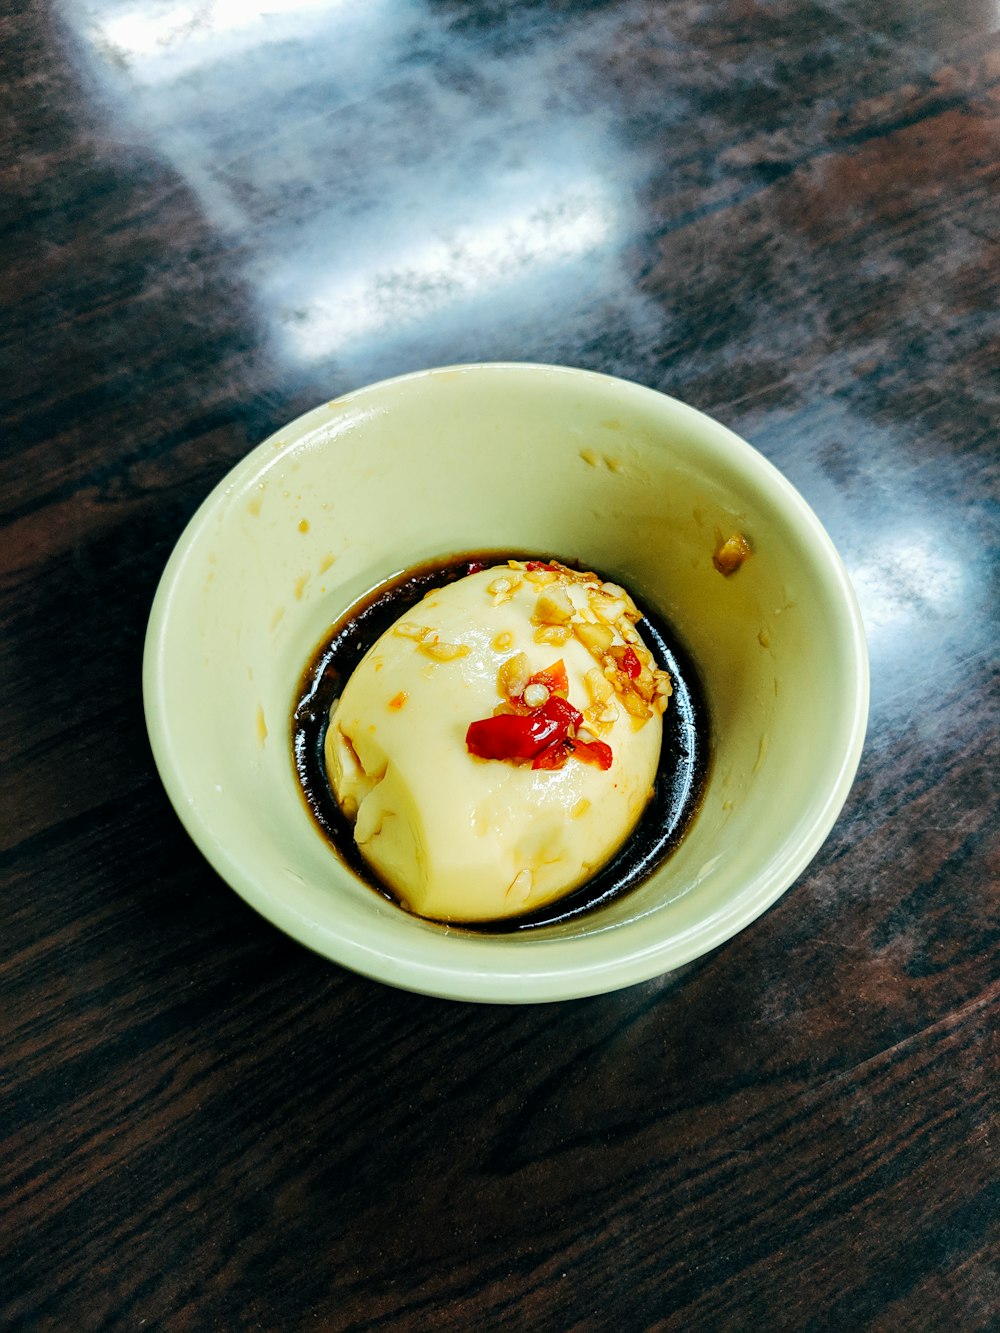 white ceramic bowl with ice cream